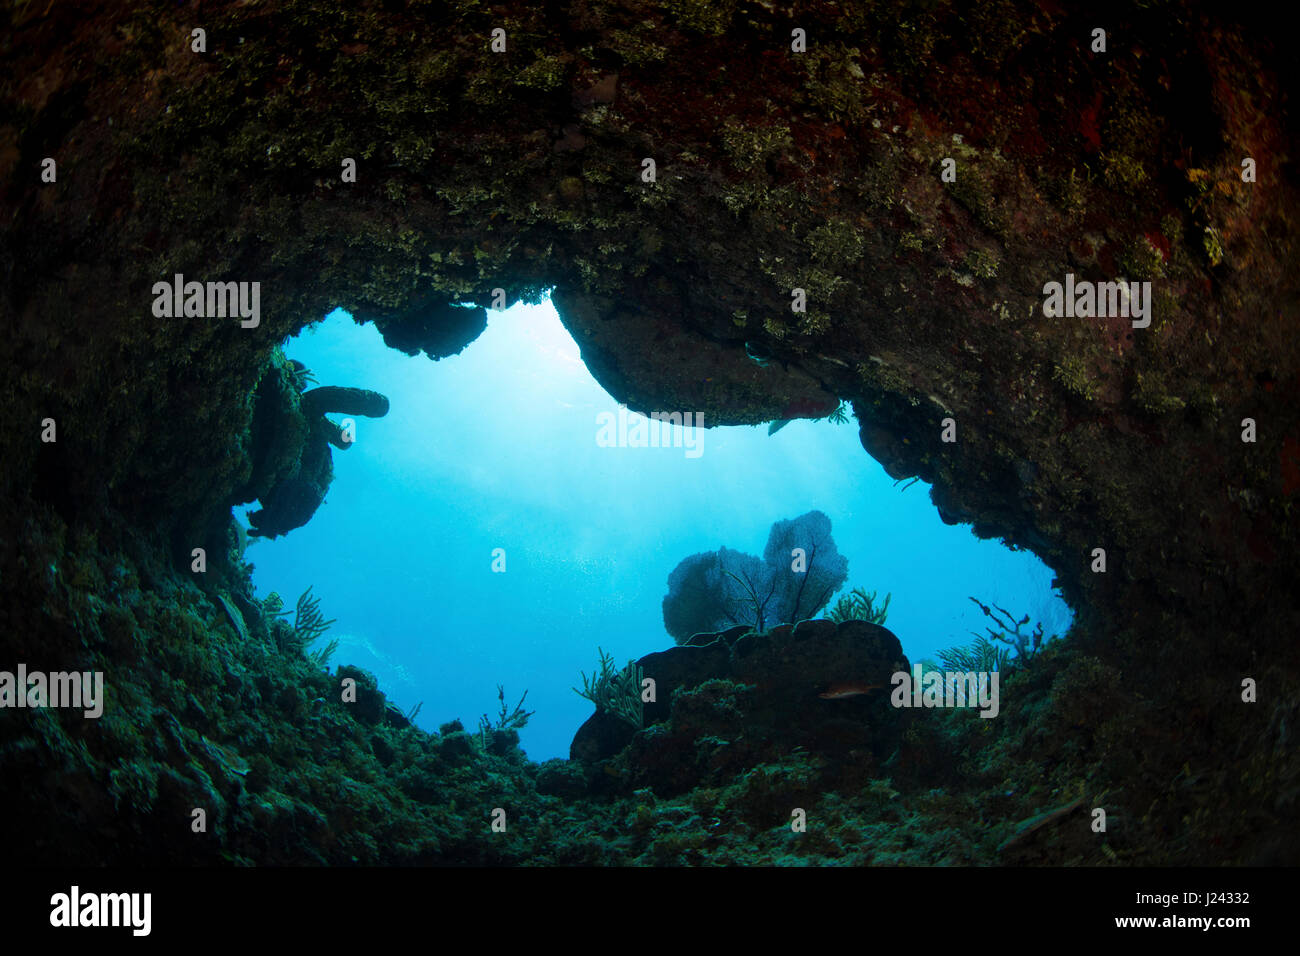 Eröffnung im Korallenriff bedeutet Mannes Erkundung der Unterwasserwelt. Stockfoto